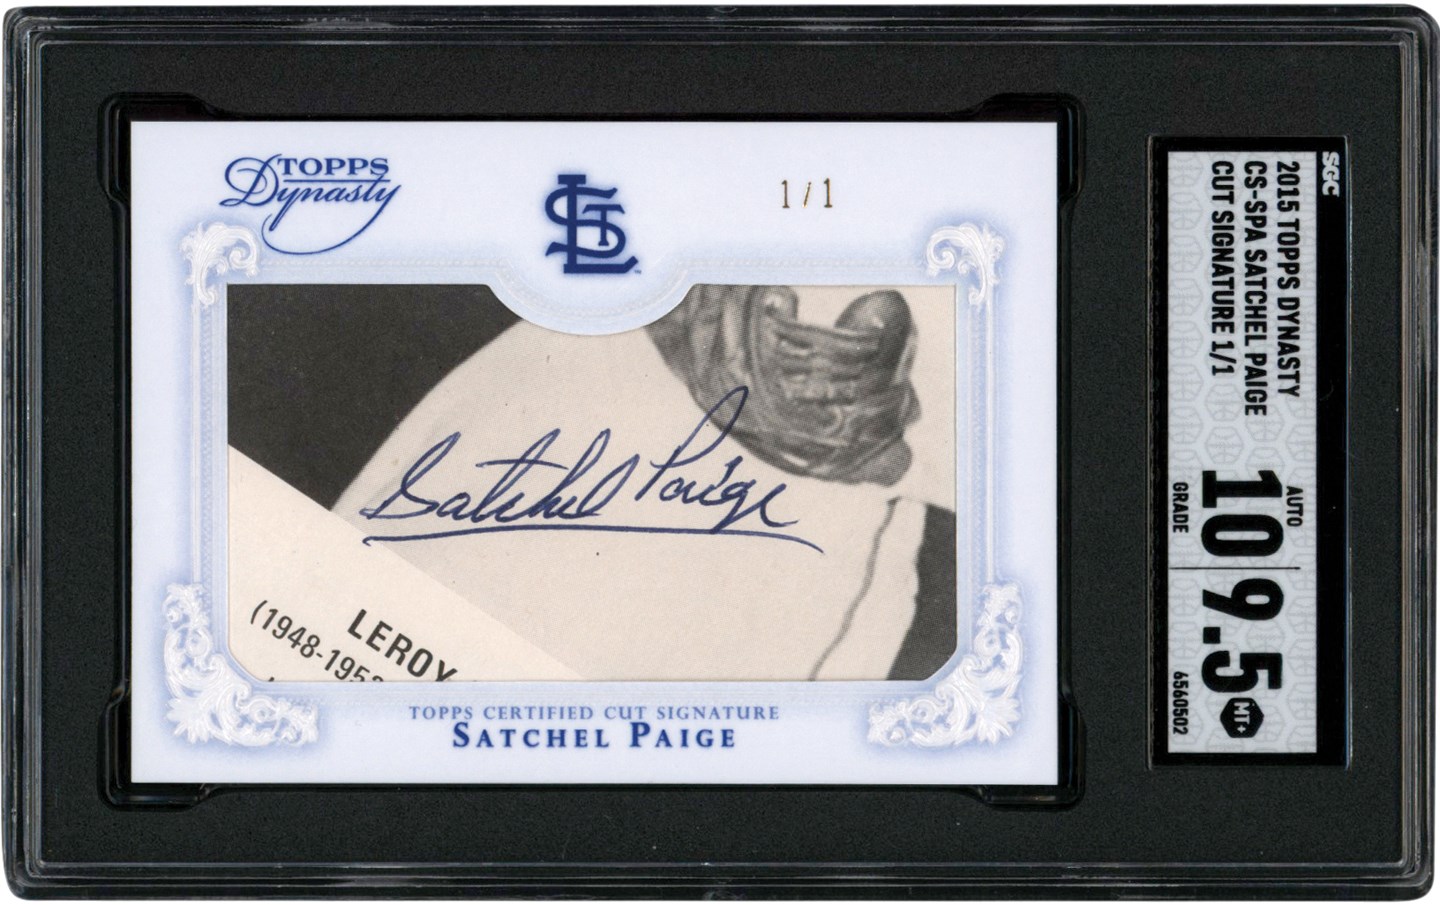 2015 Topps Dynasty Baseball Cut Signatures #CSSP Satchel Paige Autograph #1/1 SGC MINT+ 9.5 Auto 10